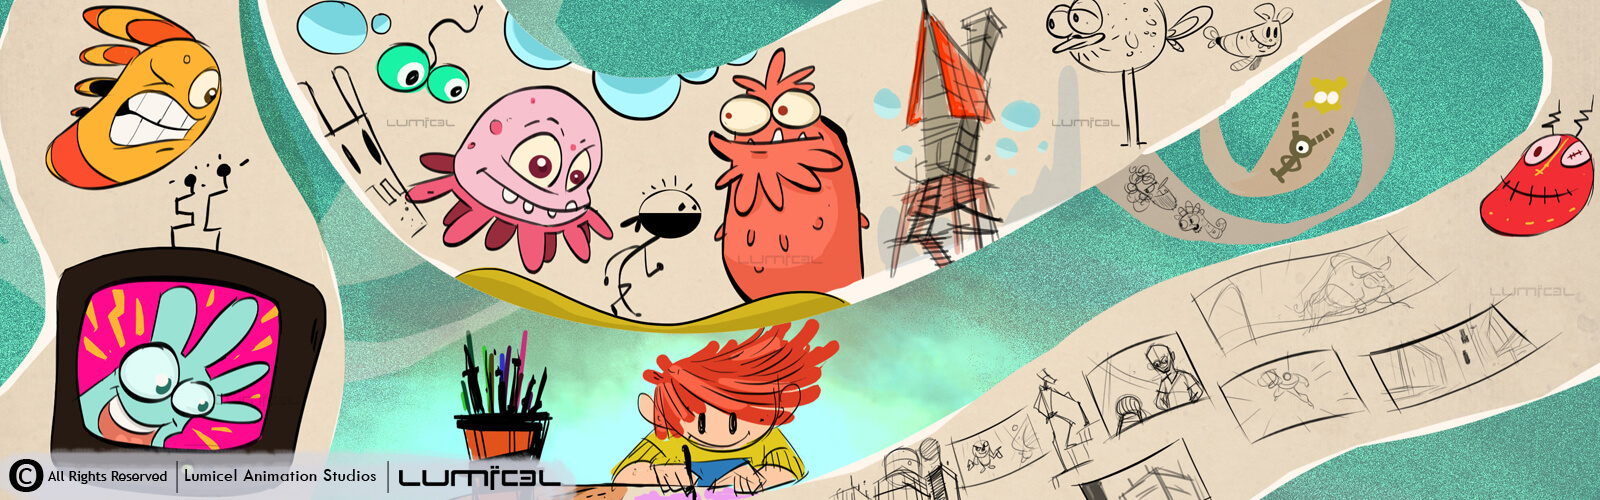 Zyten - Childrens 2D Animation Series